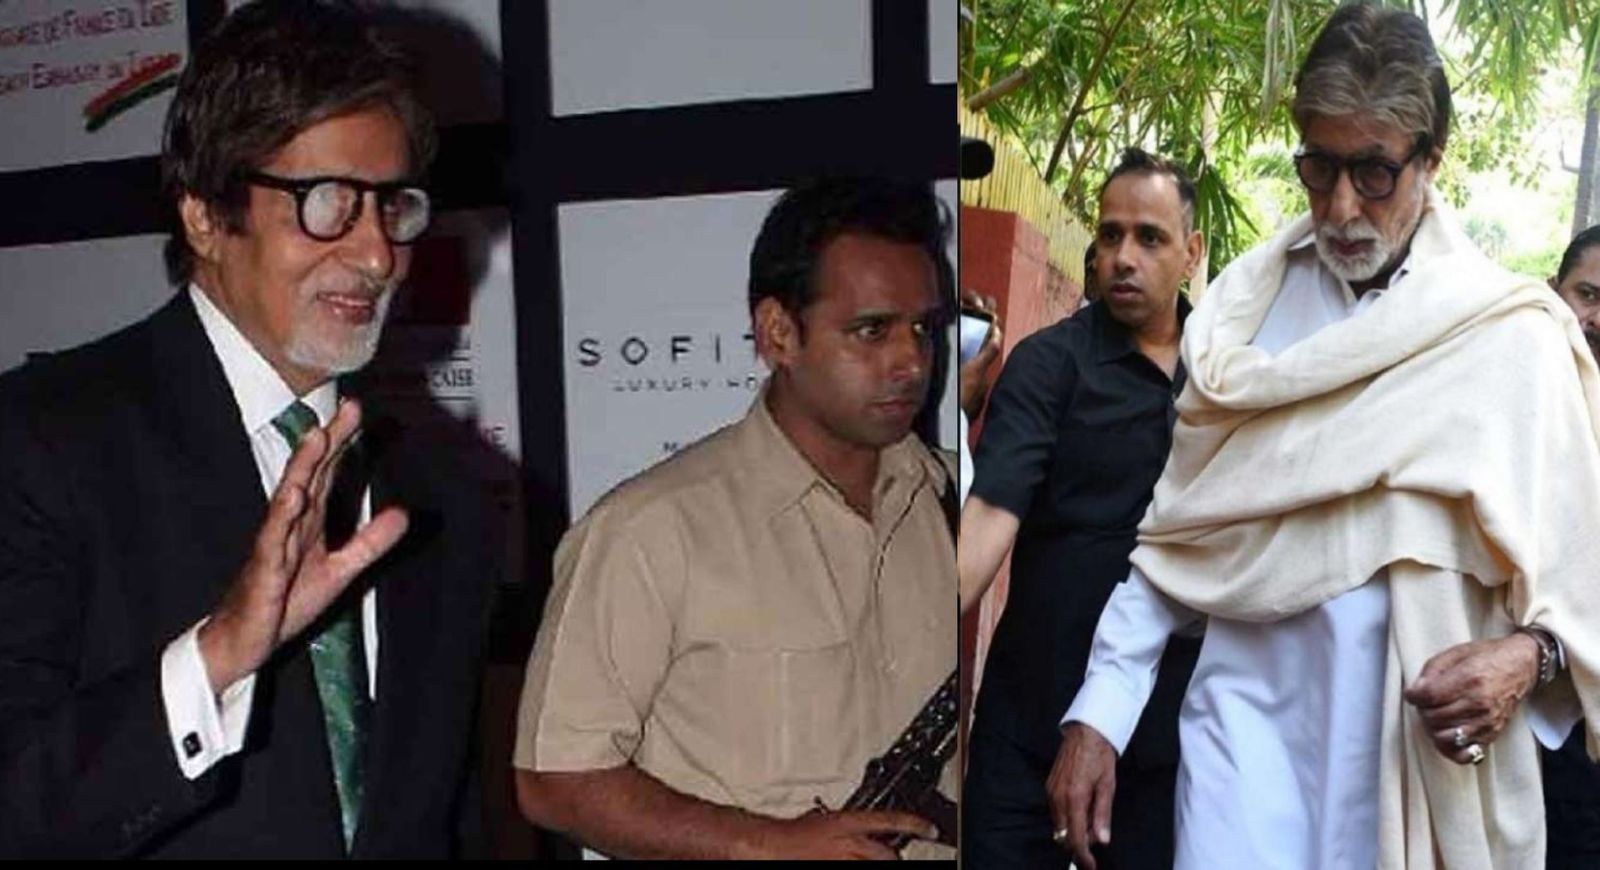 अमिताभ बच्चन के पर्सनल बॉडीगार्ड जीतेंद्र शिंदे की सैलरी है इतने करोड़, जानकर लग जायेगा झटका